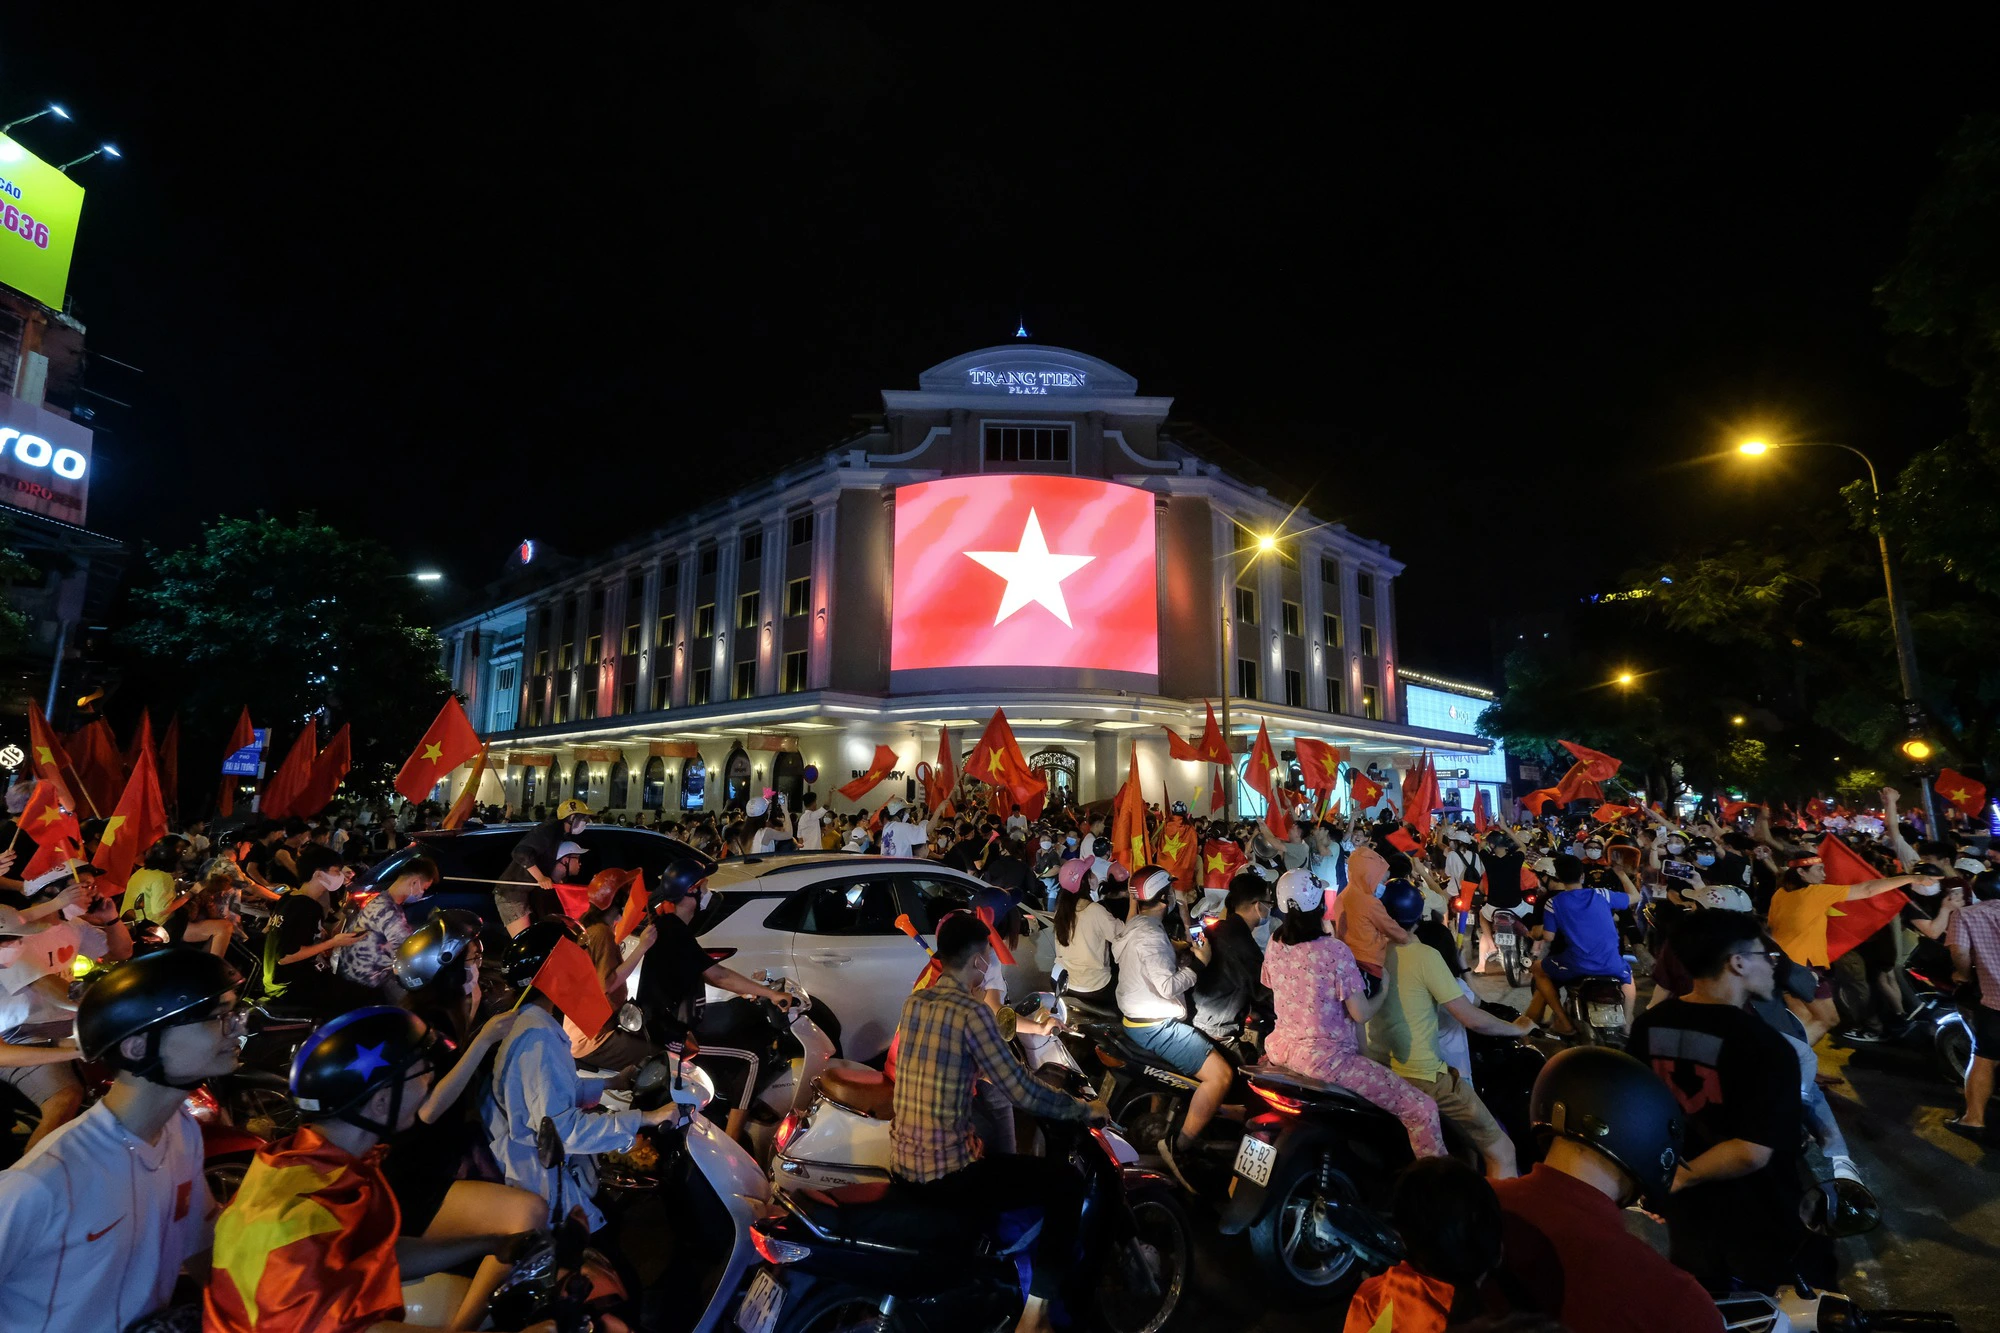 Đêm U23 Việt Nam giành HCV SEA Games trả món nợ với người Thái, người dân cả nước xuống đường nhuộm đỏ mọi tuyến phố - Ảnh 4.